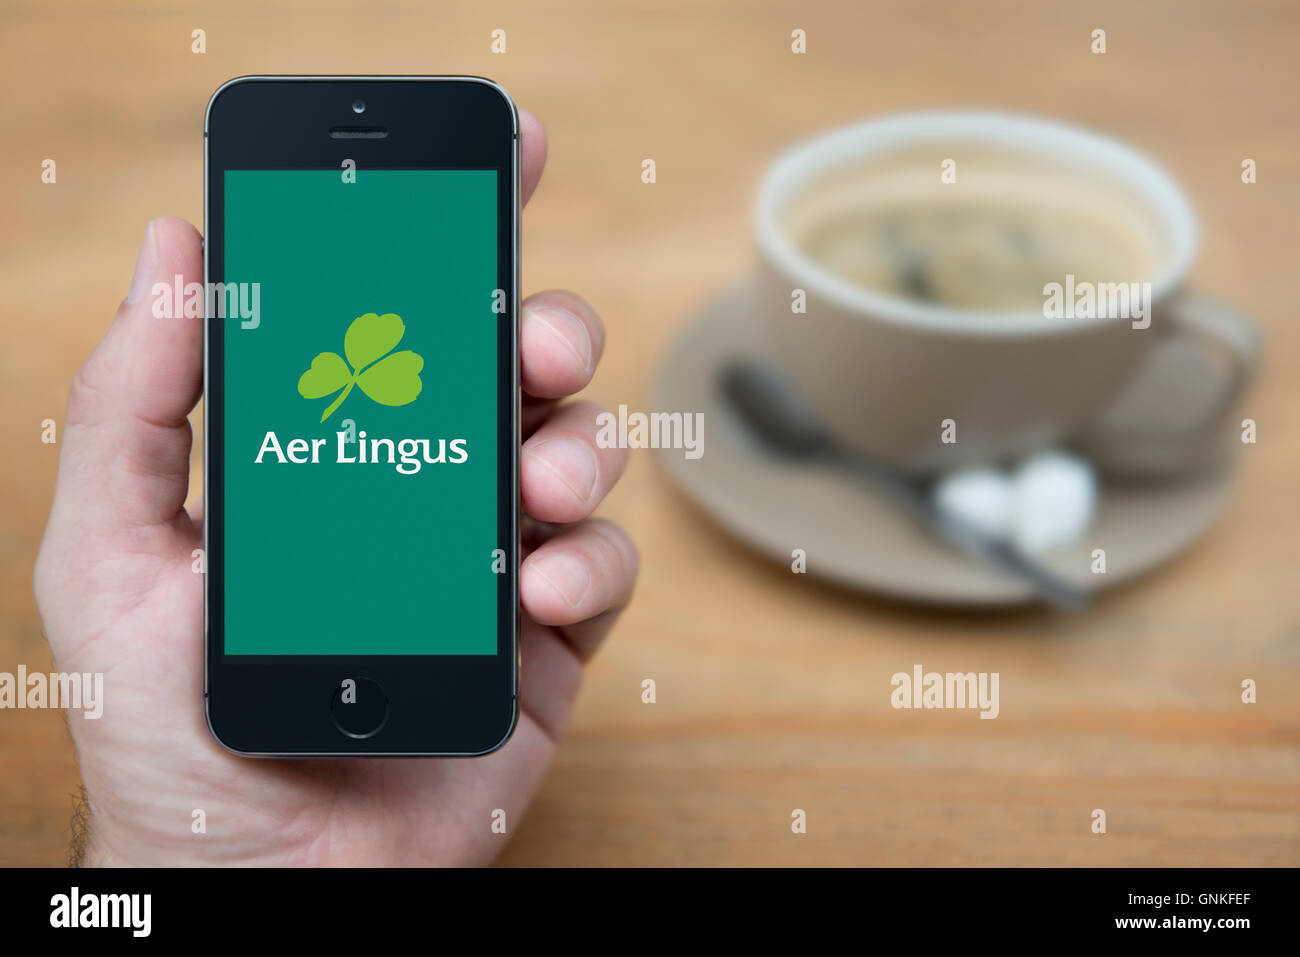 Un homme se penche sur son iPhone qui affiche le logo d'Aer Lingus, tandis qu'assis avec une tasse de café (usage éditorial uniquement). Banque D'Images